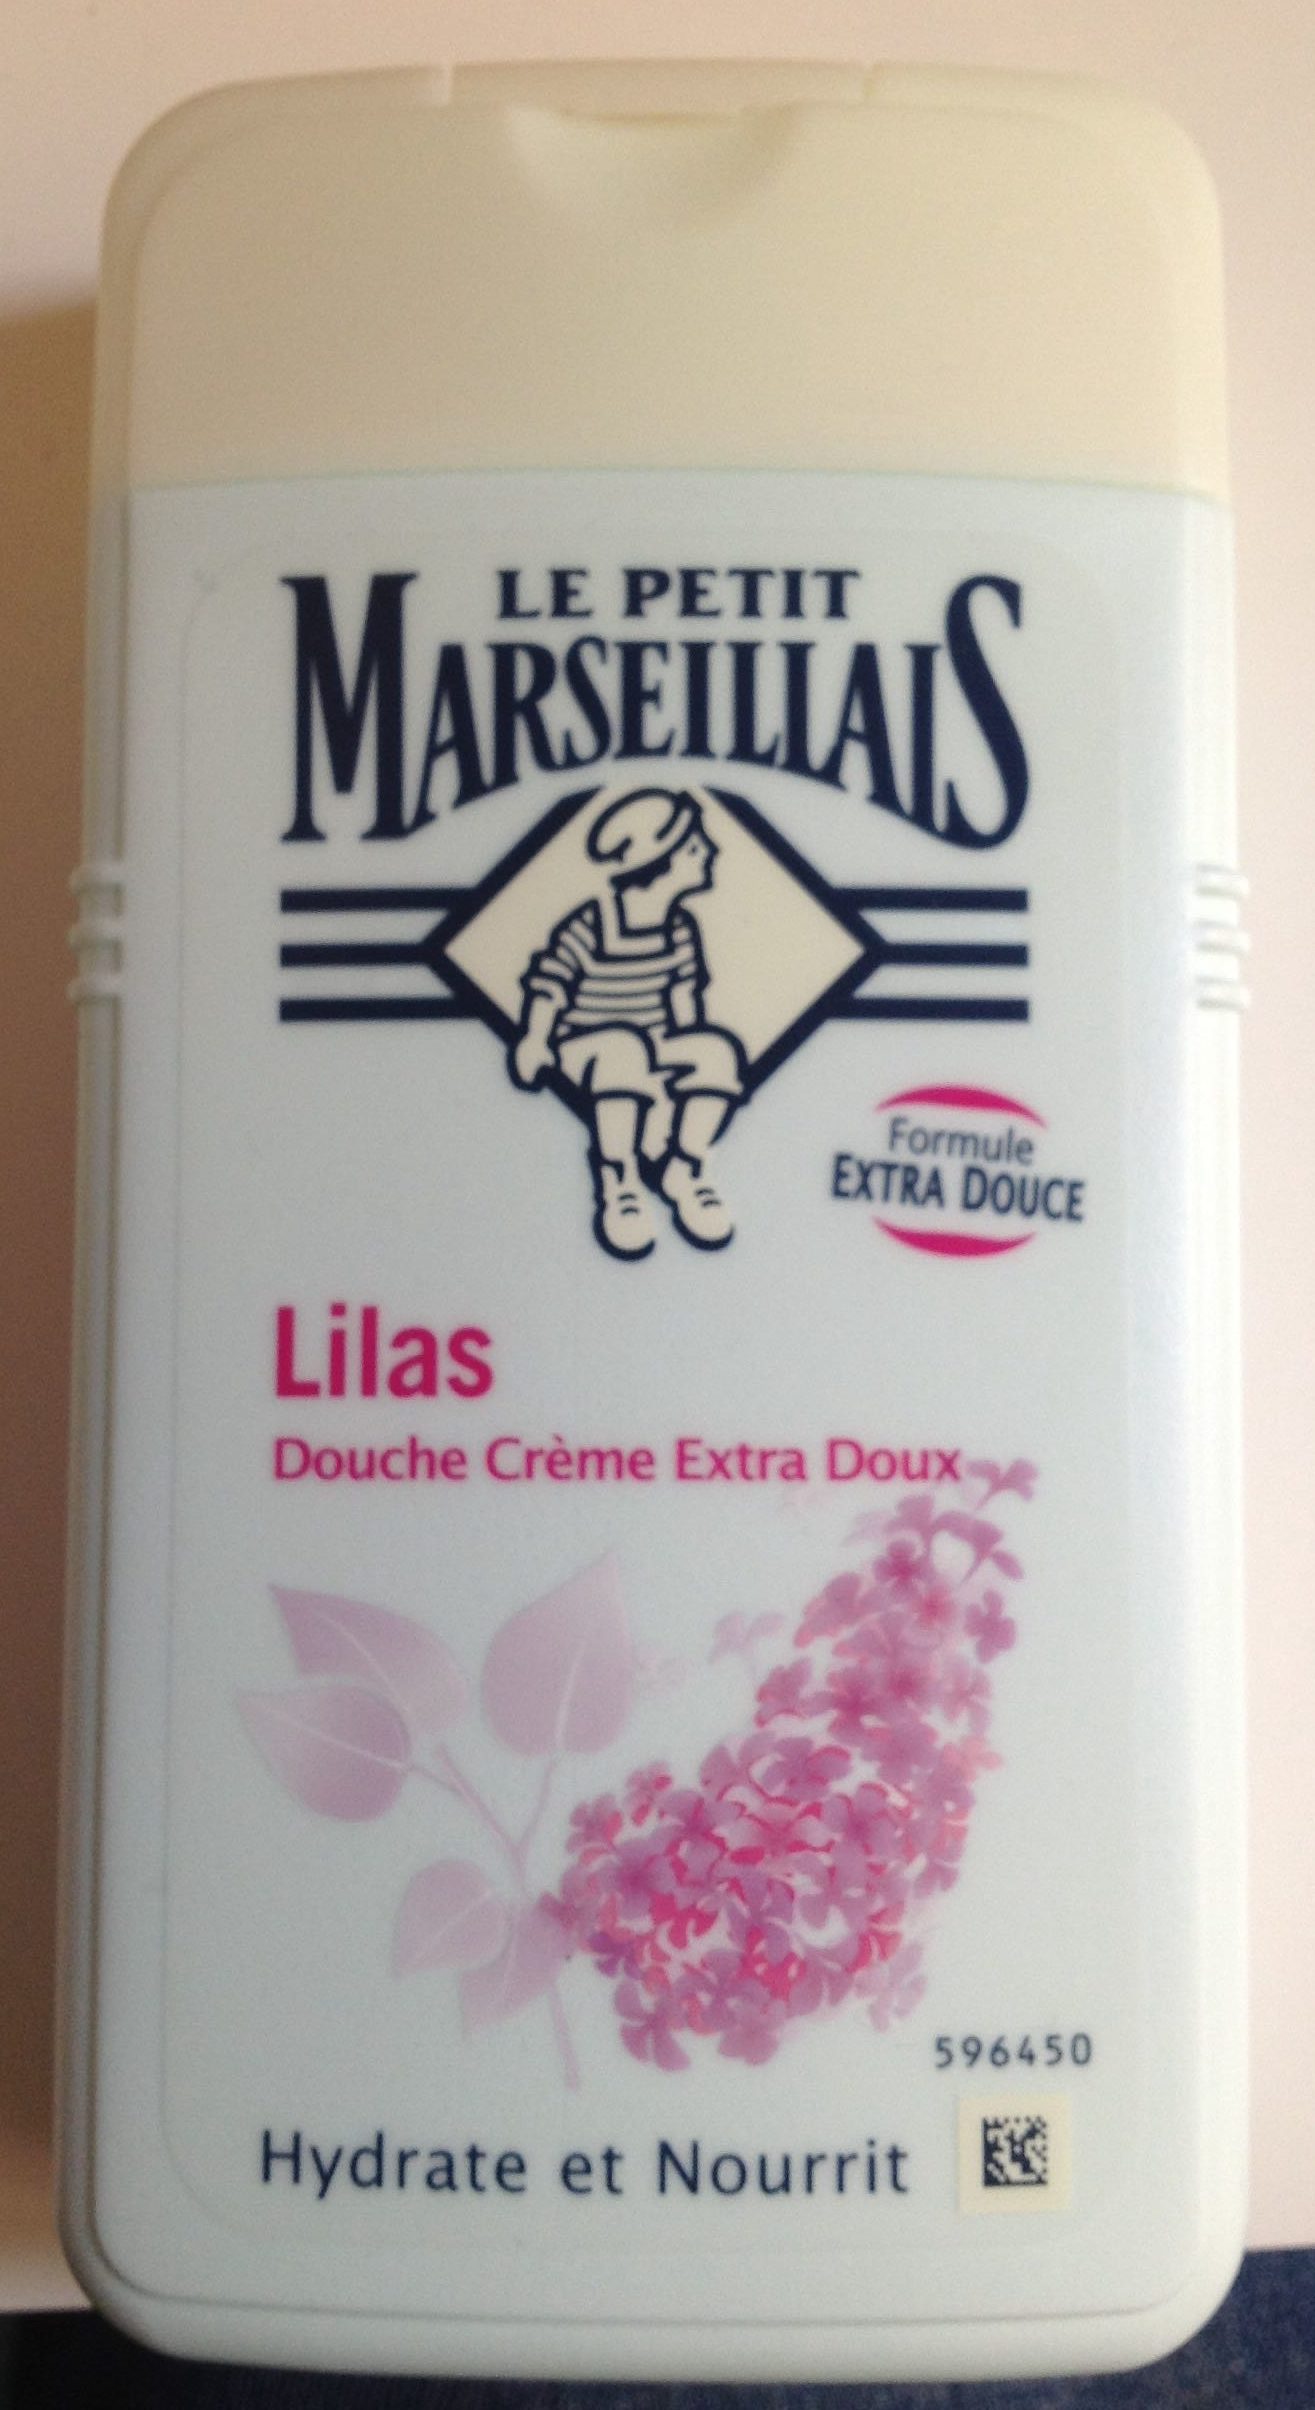 Douche crème extra doux Lilas - Product - fr